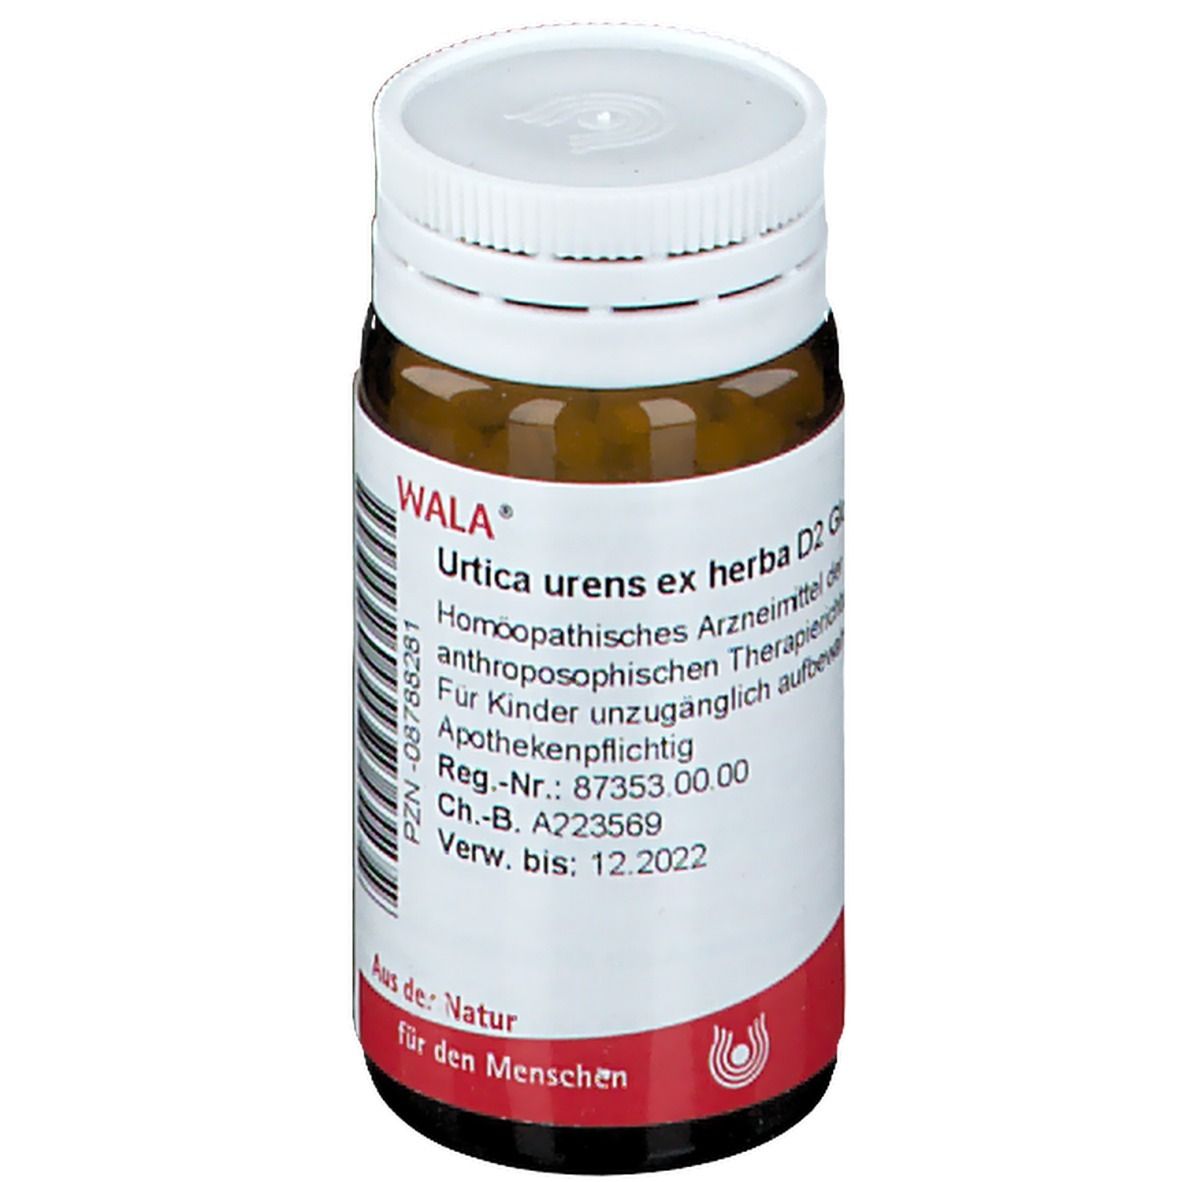 WALA® Urtica urens ex herba D 2